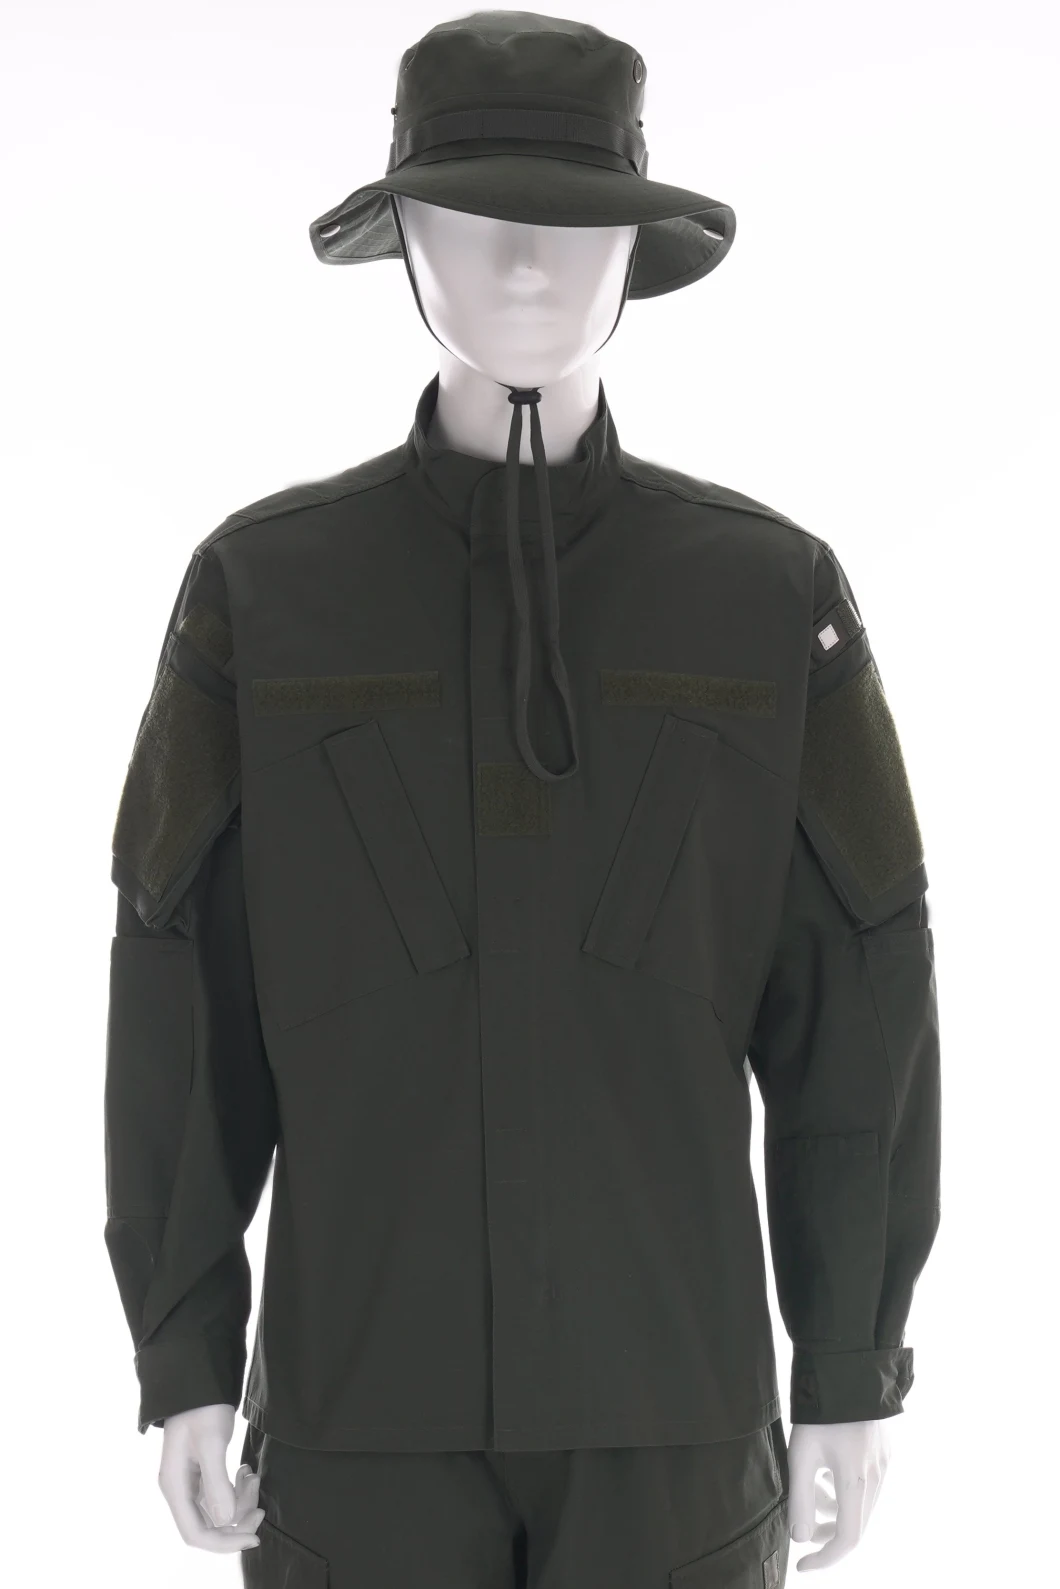 Ripstop Camouflage Uniform/Tactical Uniform/Bdu/Acu/Jacket/Pants